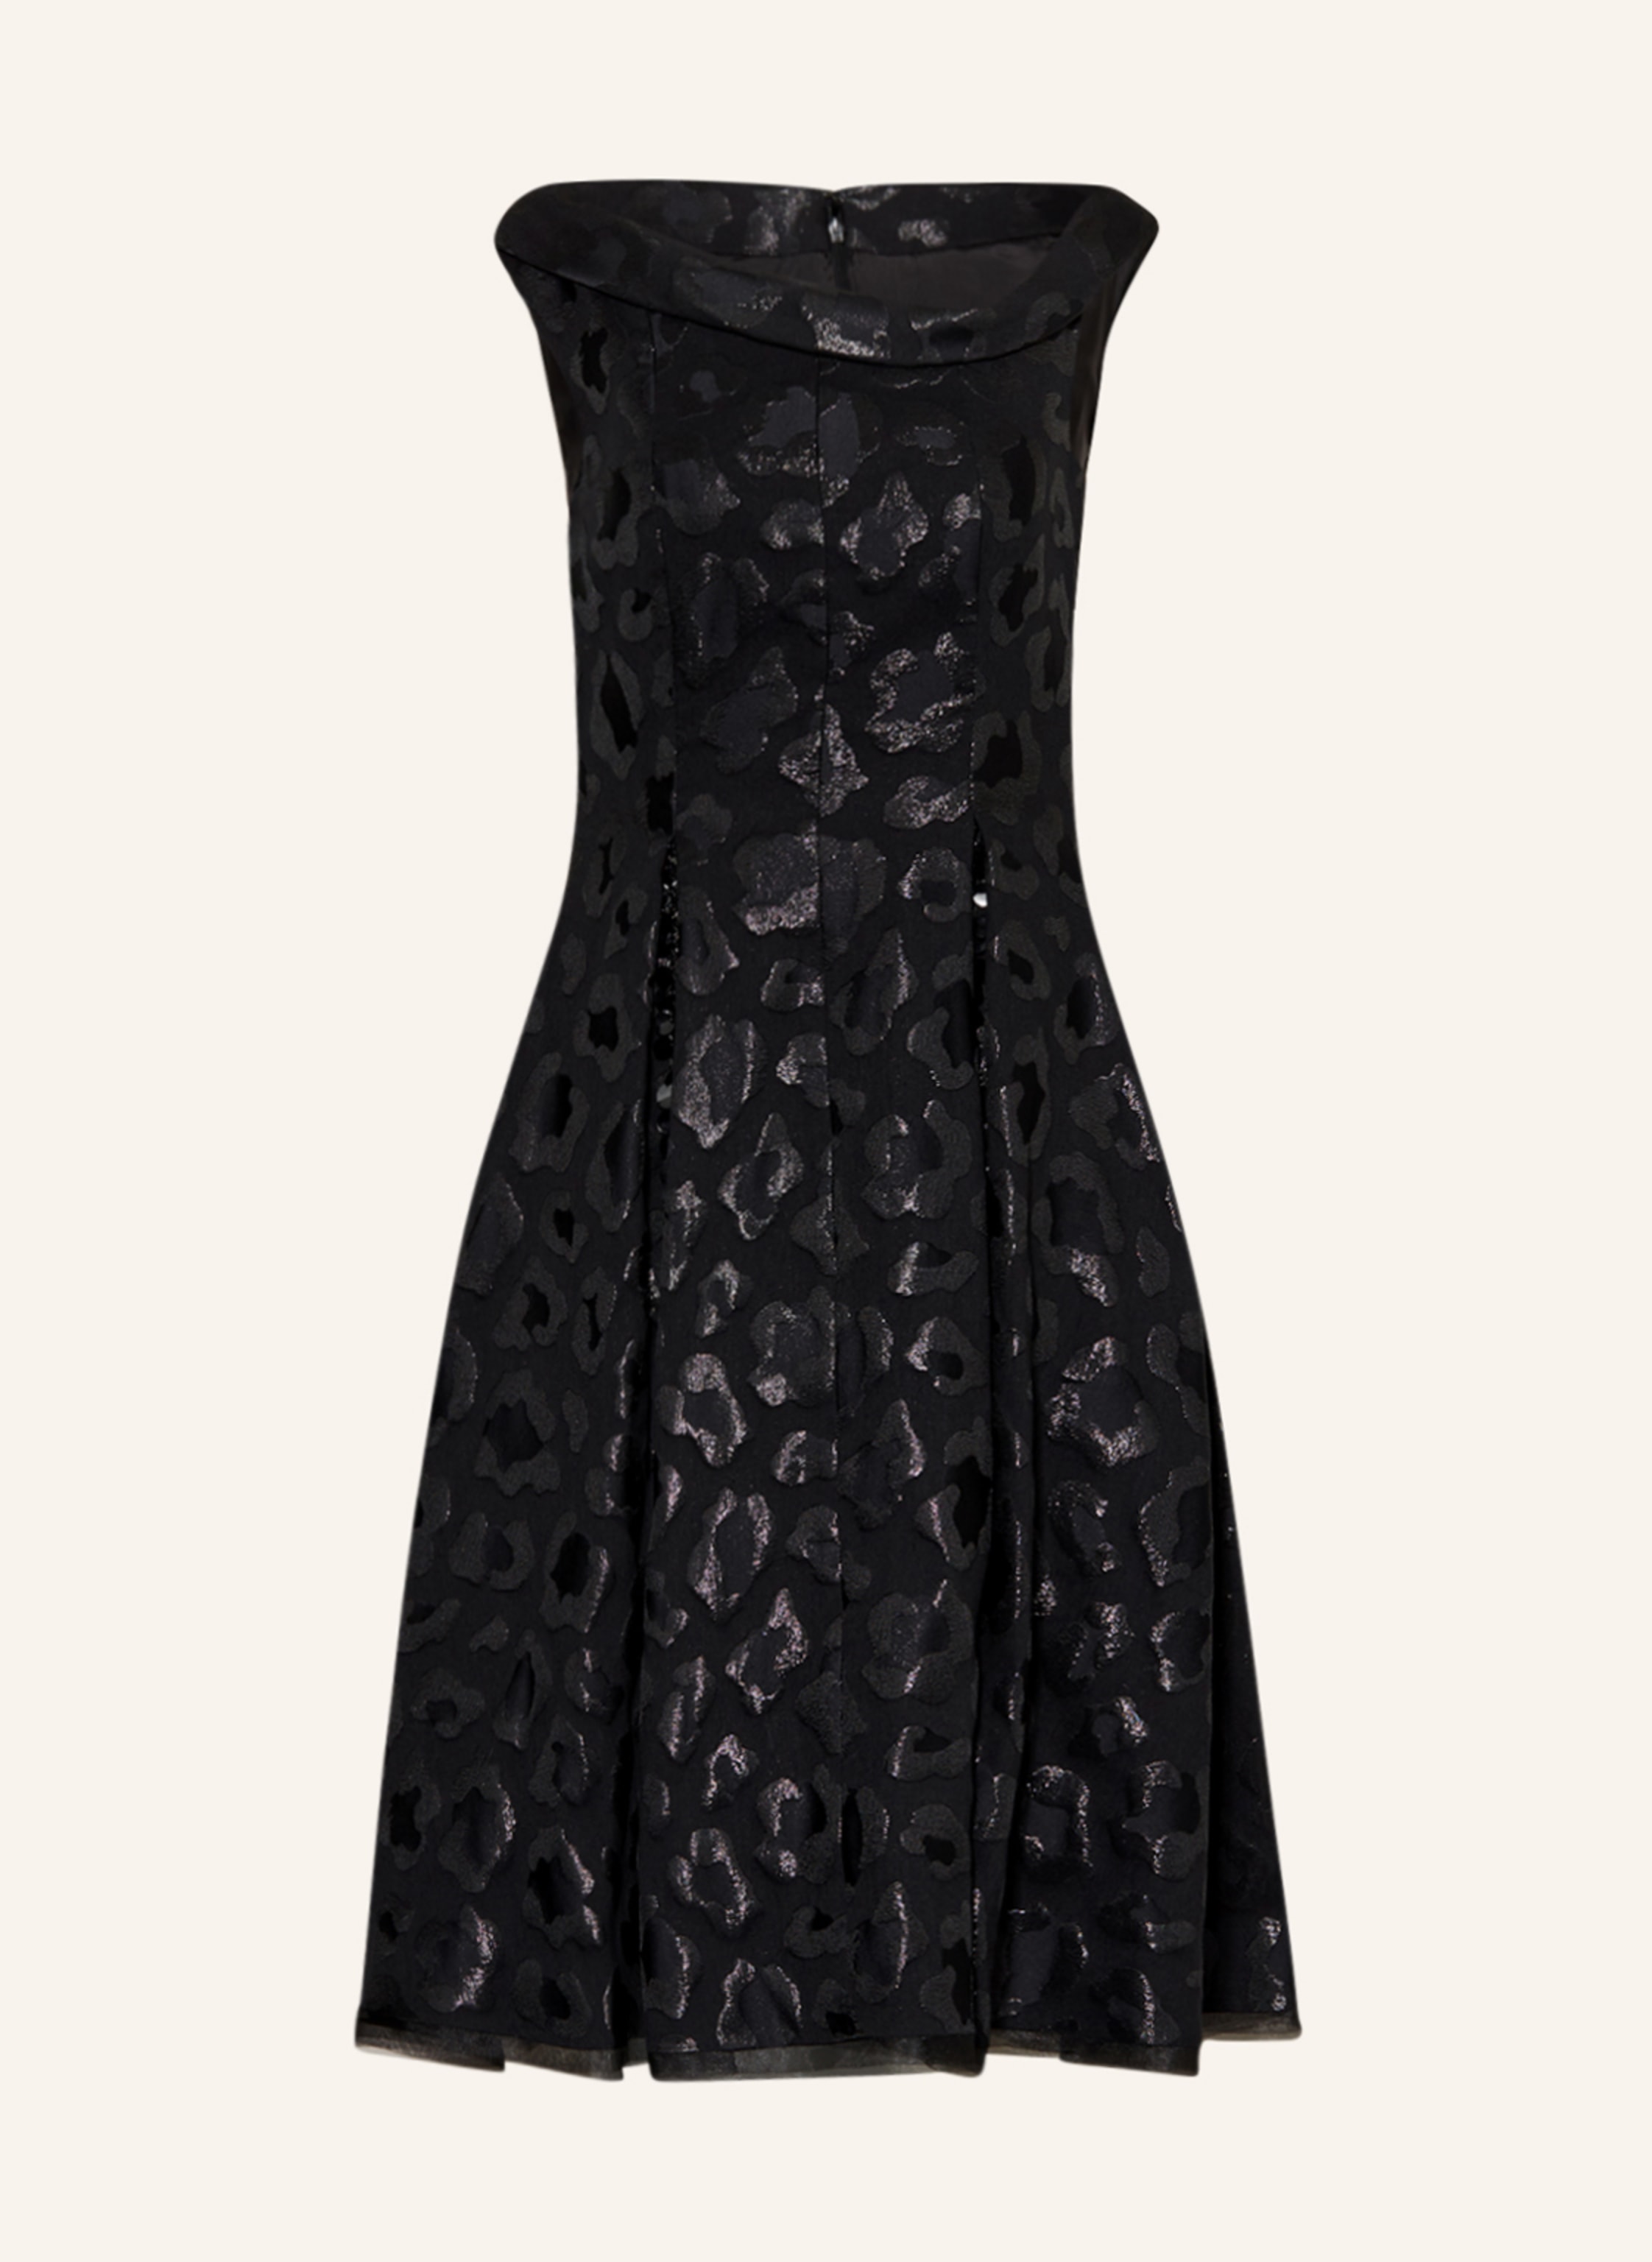 TALBOT RUNHOF Jacquard-Kleid mit Glitzergarn und Pailletten in schwarz